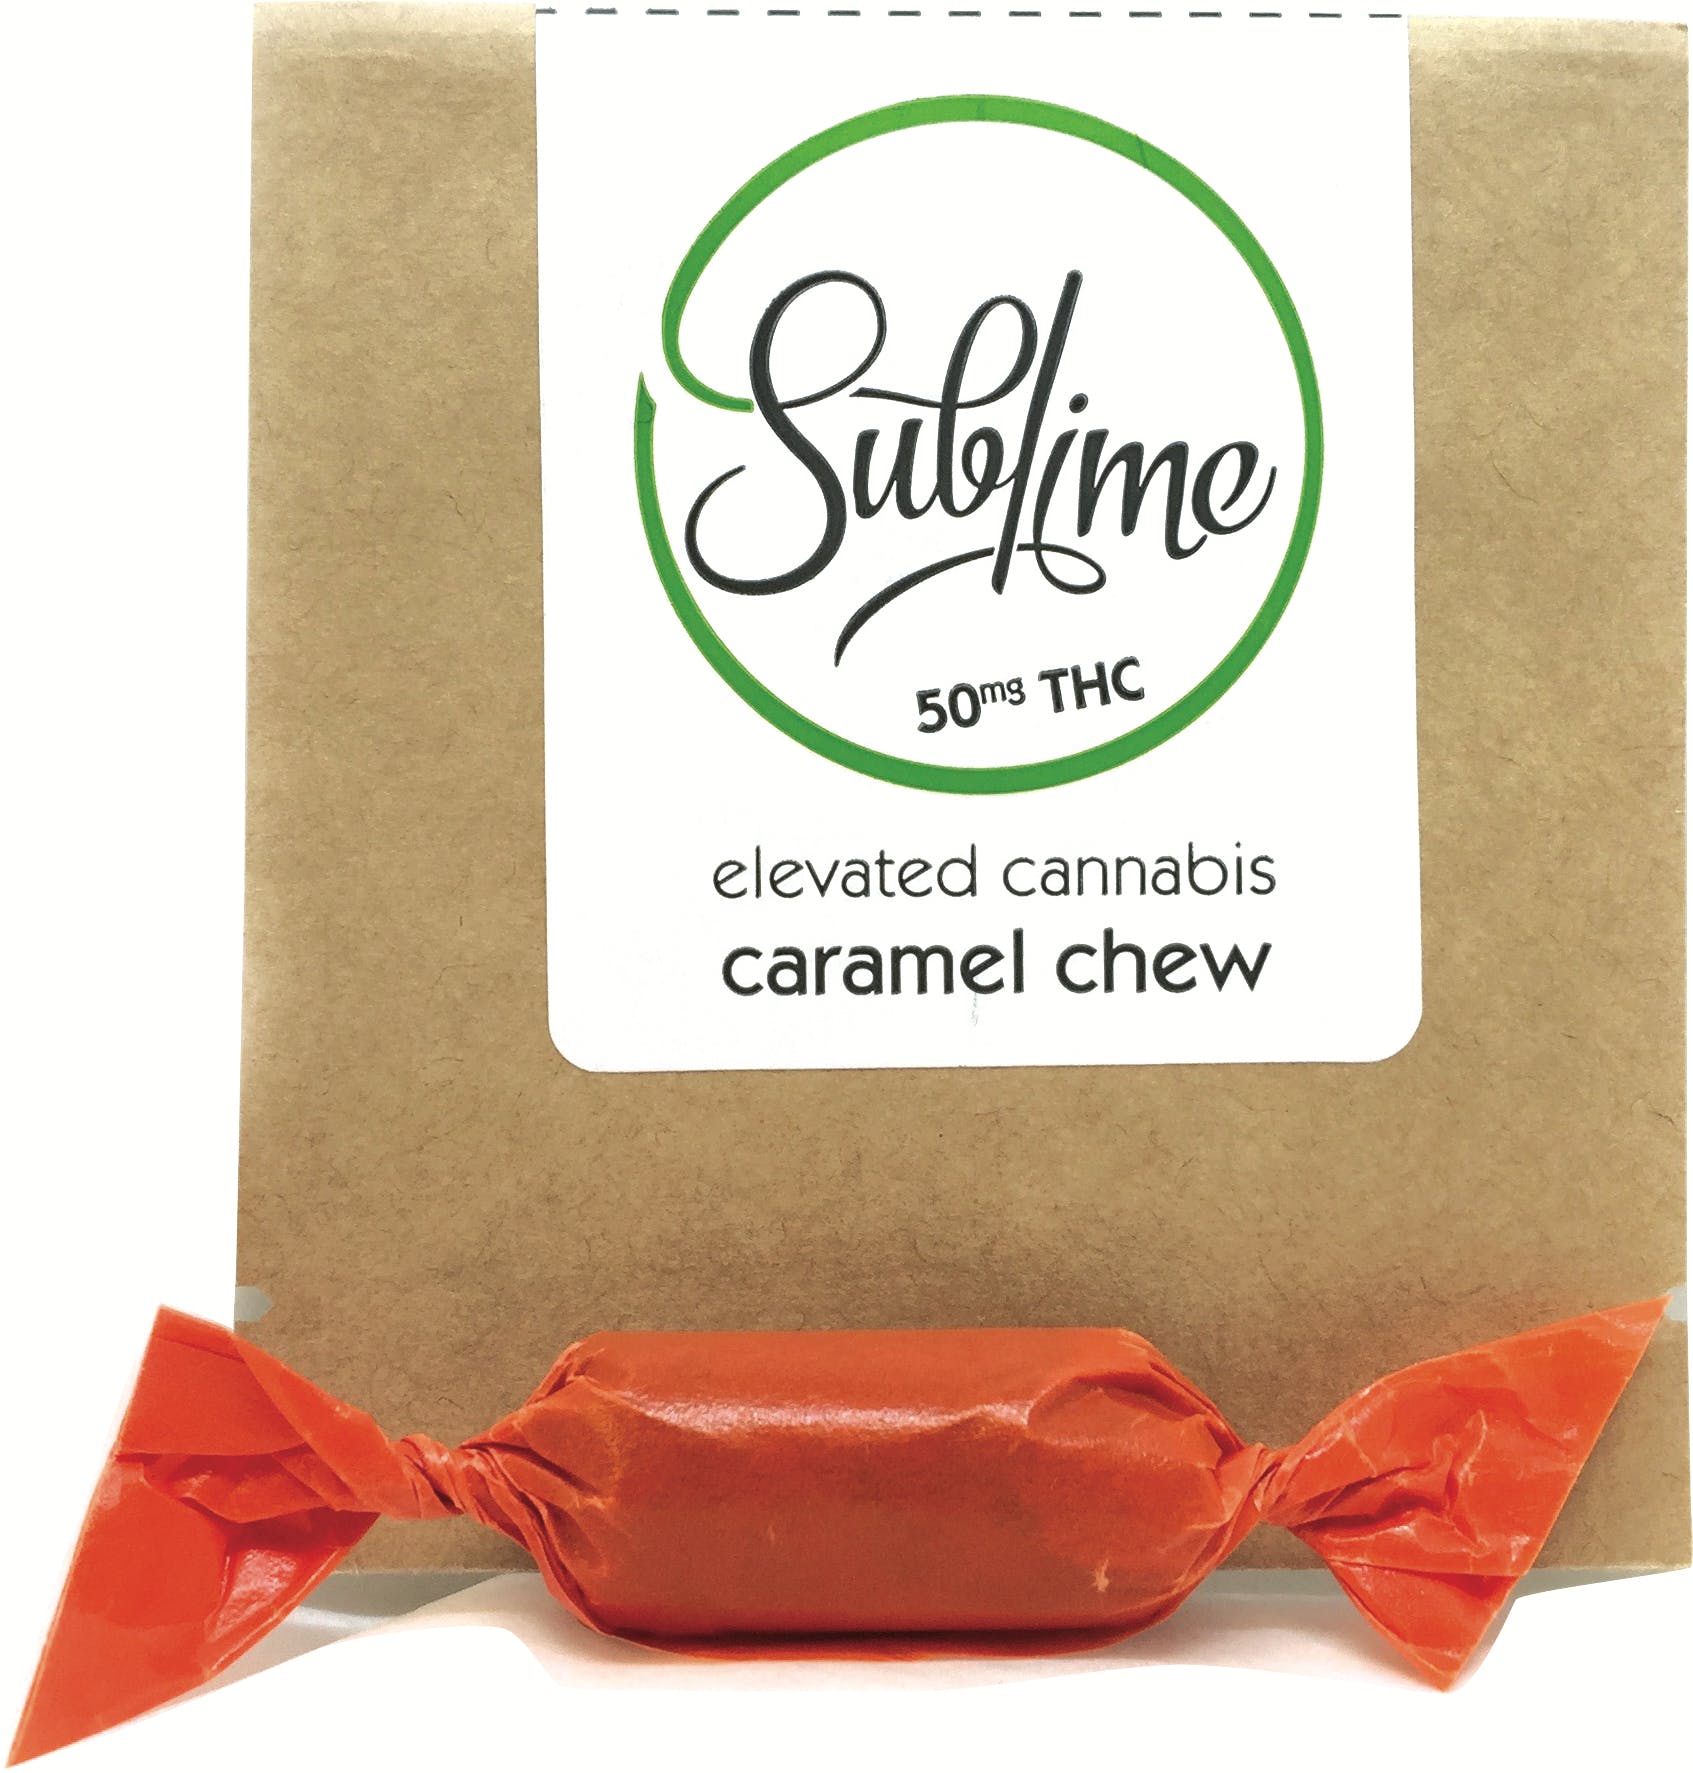 edible-sublime-caramel-chew